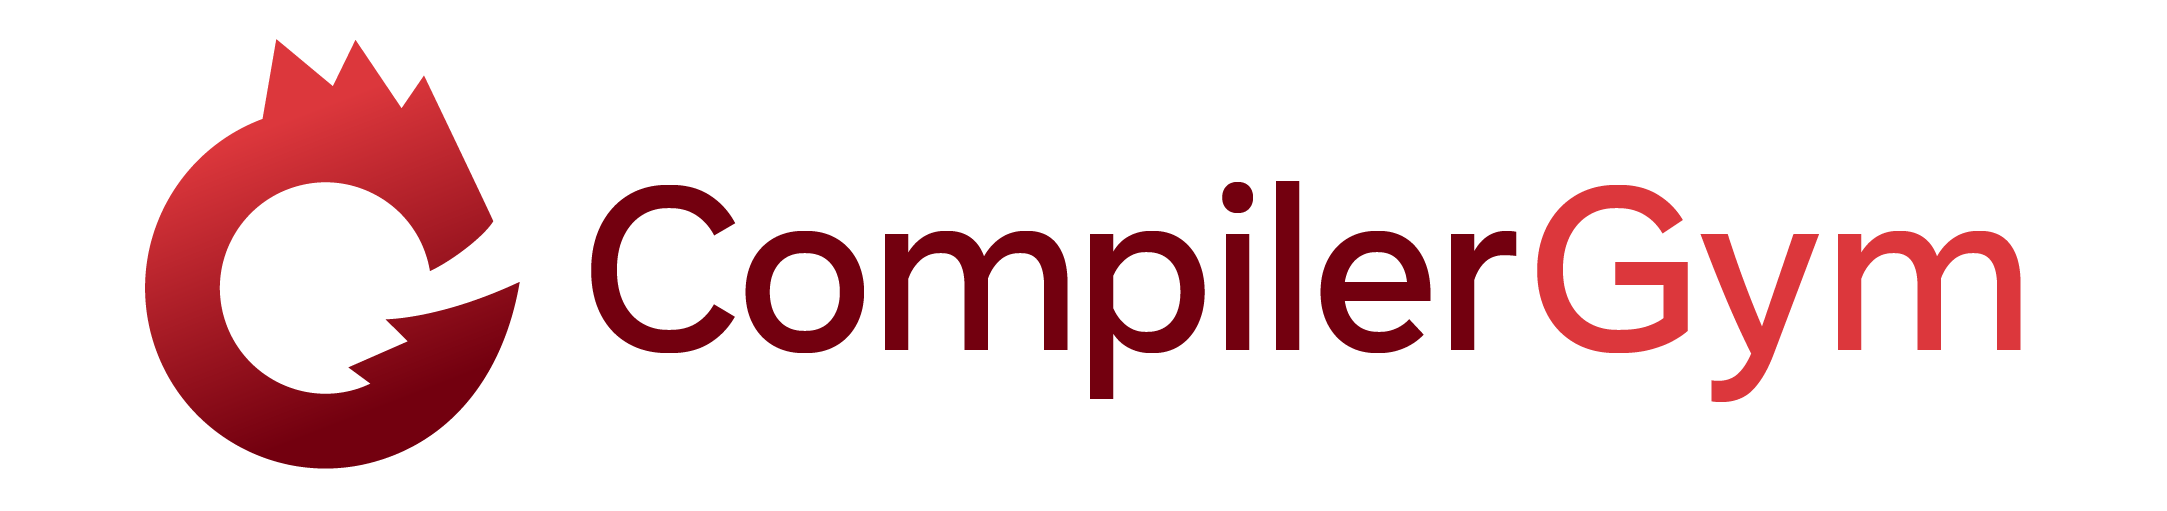 CompilerGym